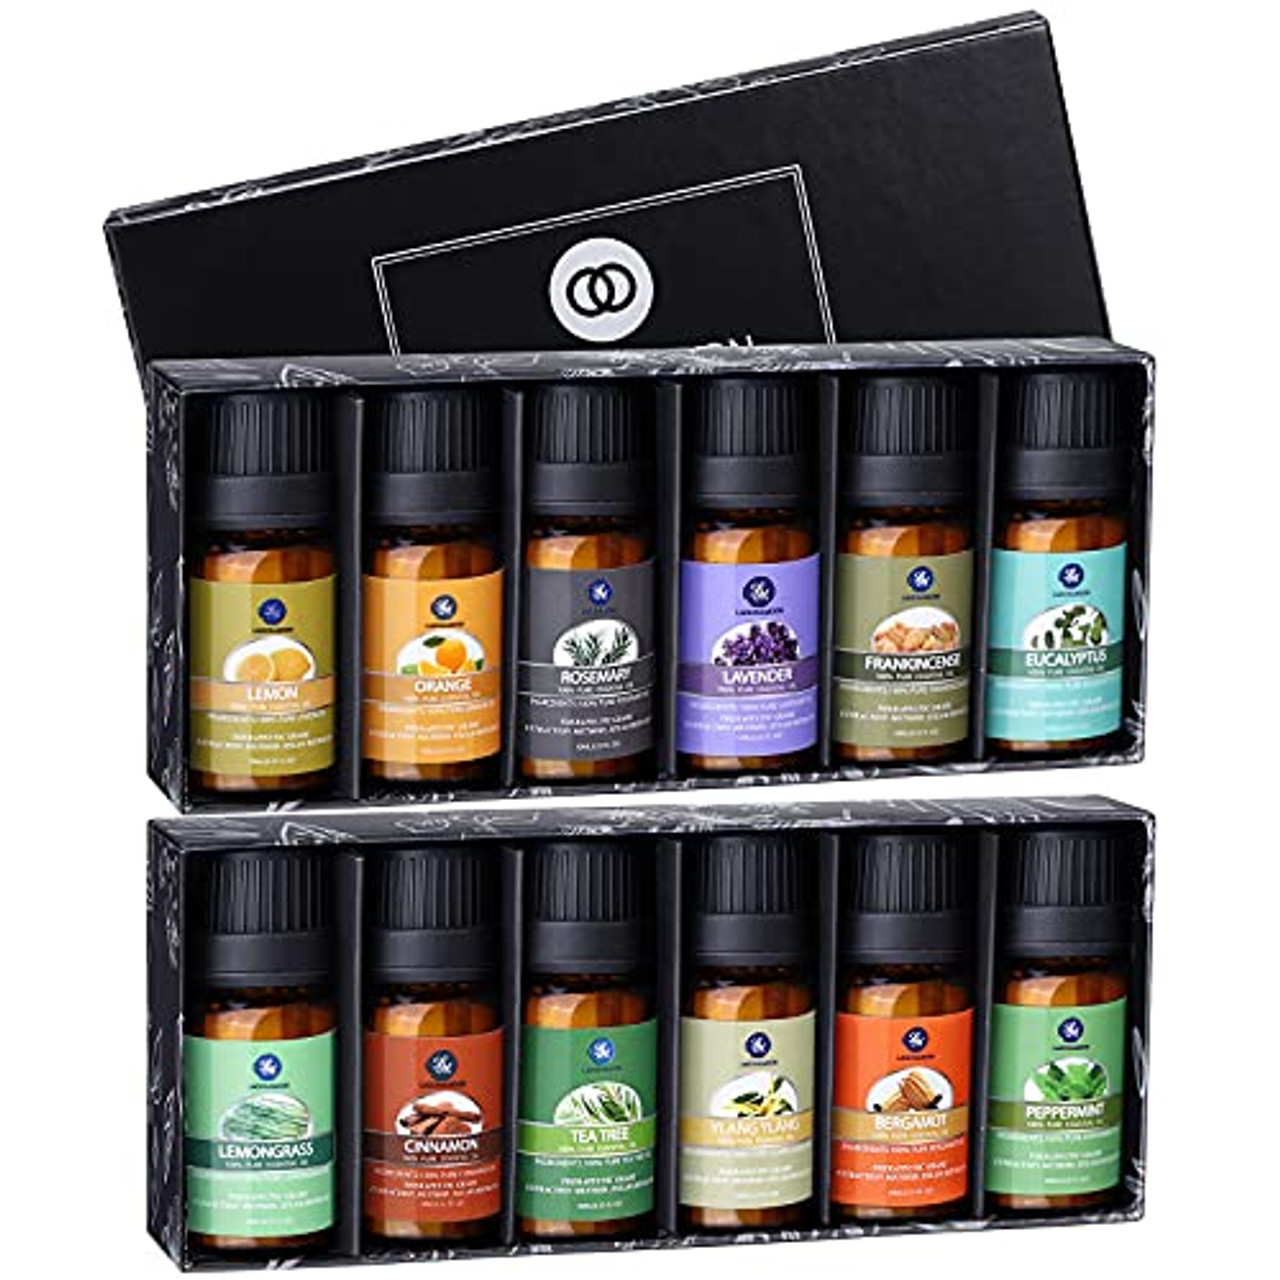 Lagunamoon 12 Pcs Upgraded Premium Essential Oils Set for Massage